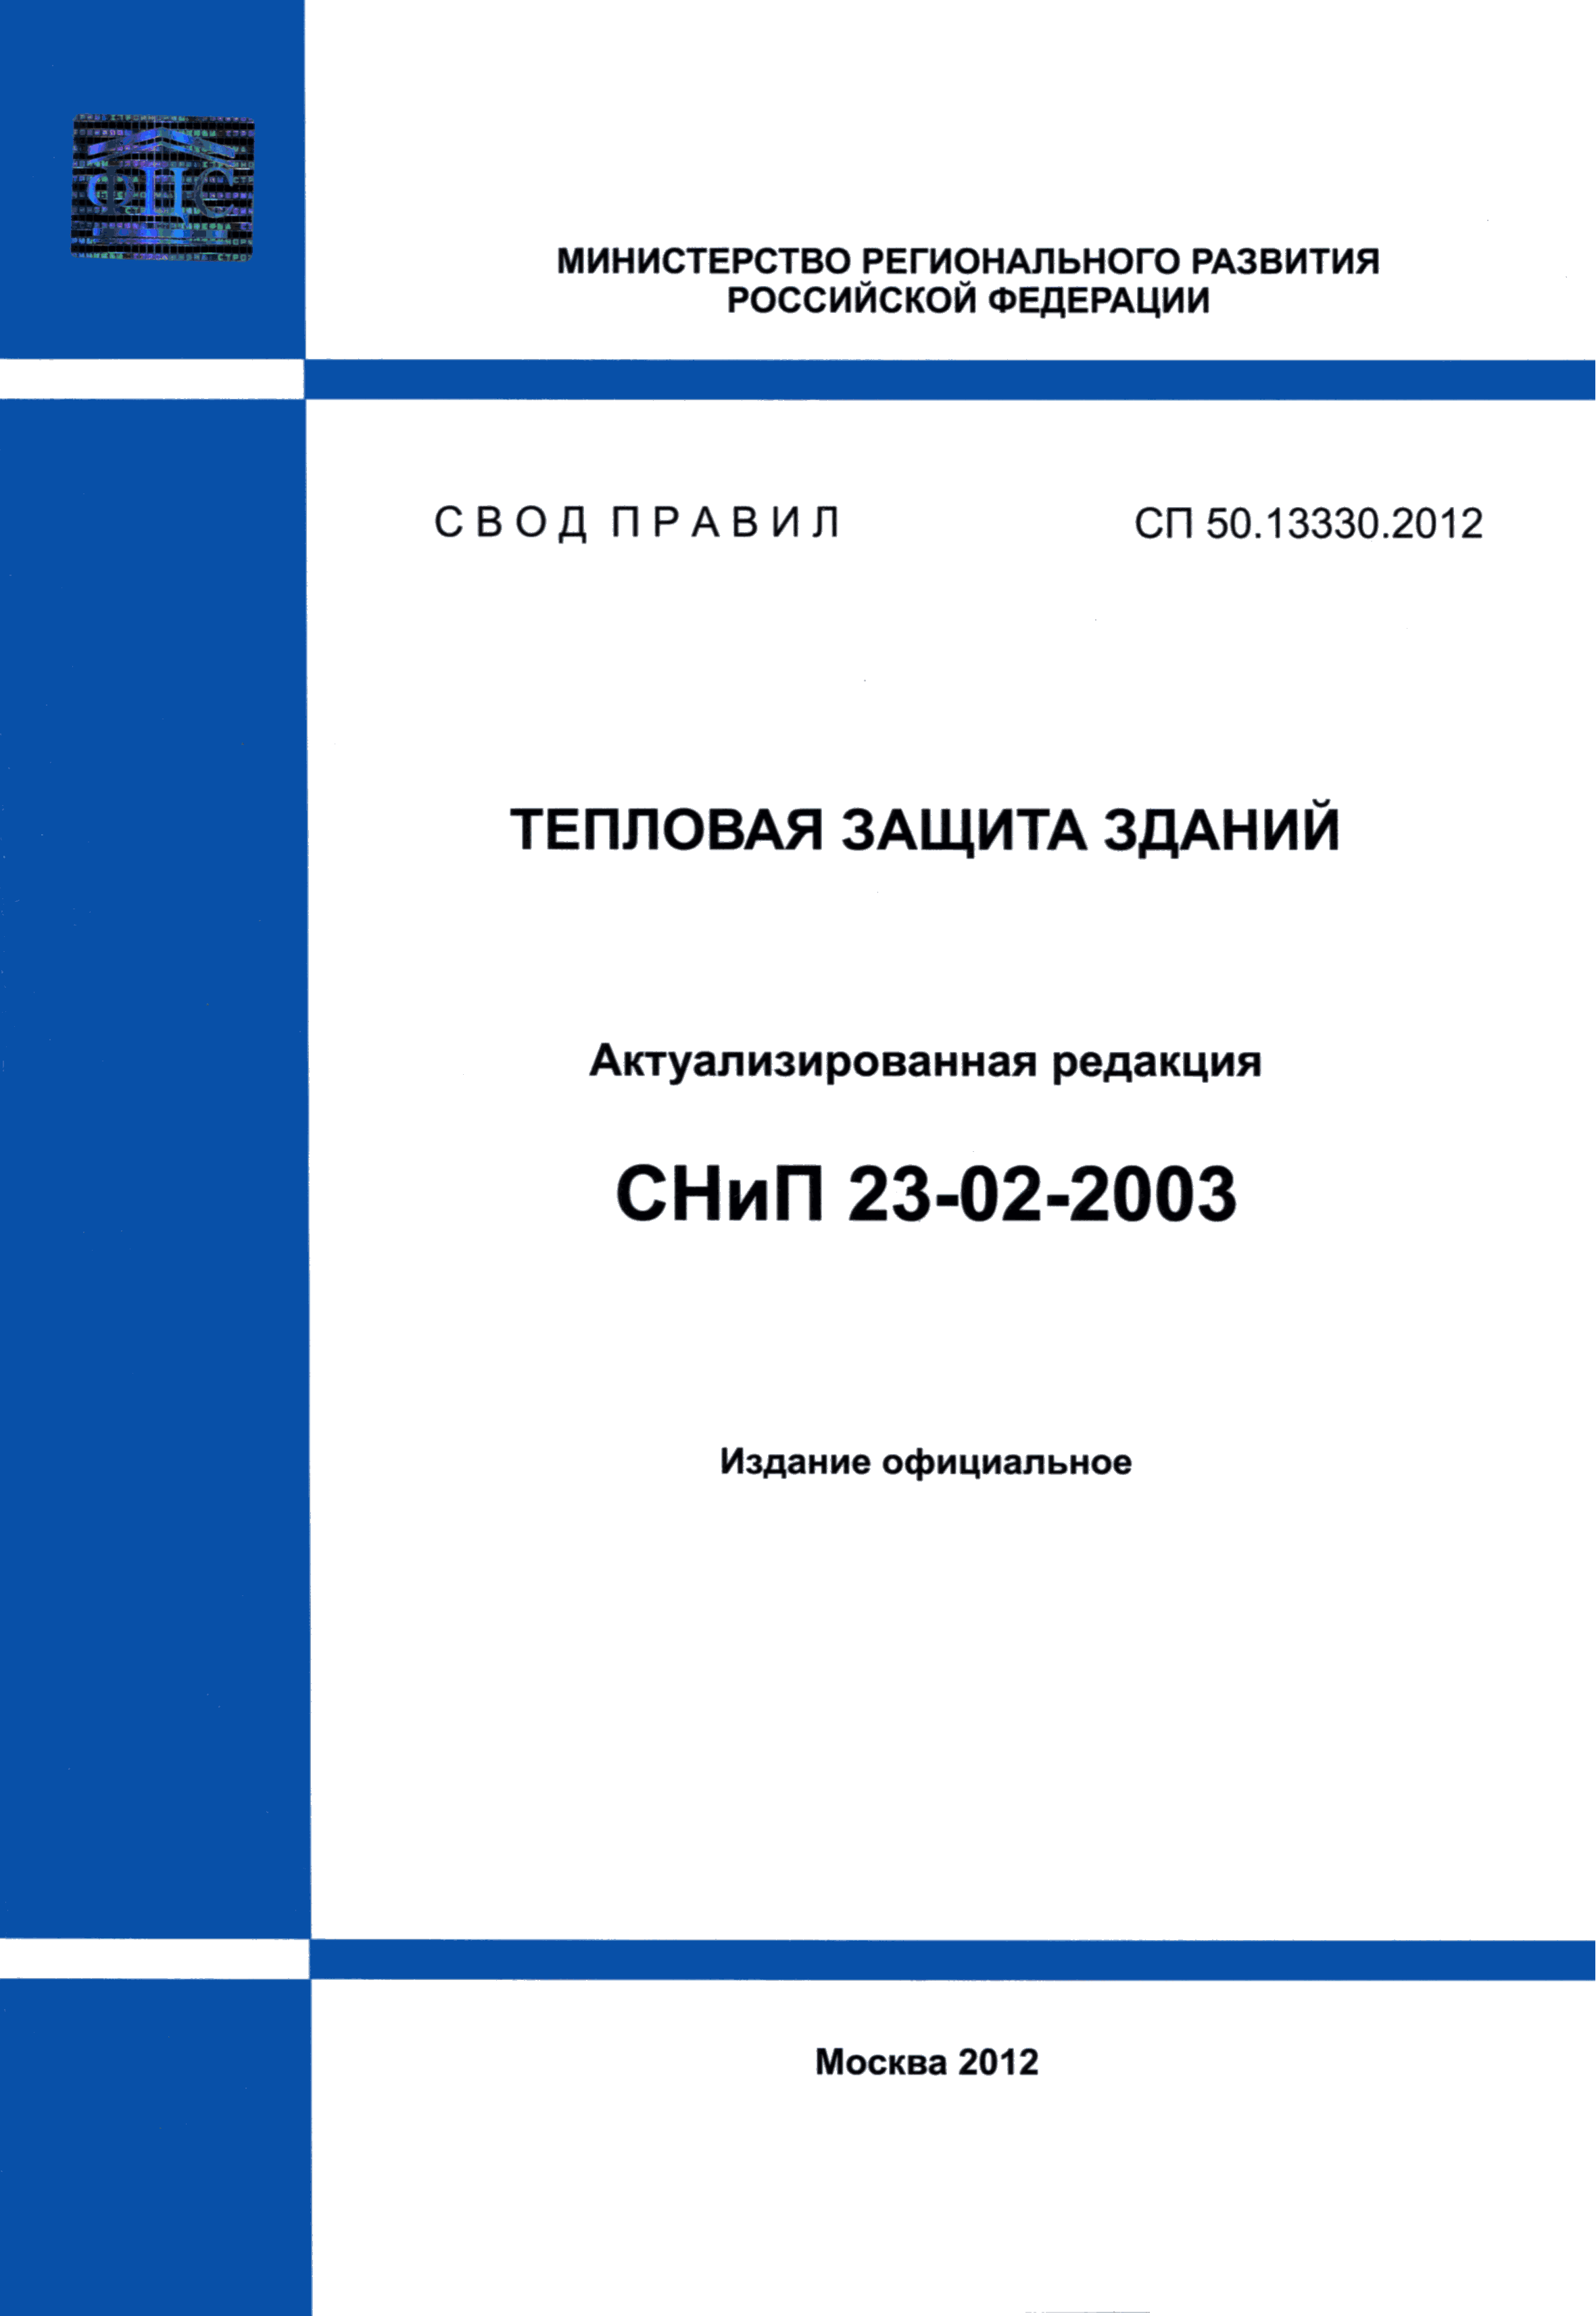 СП 50.13330.2012